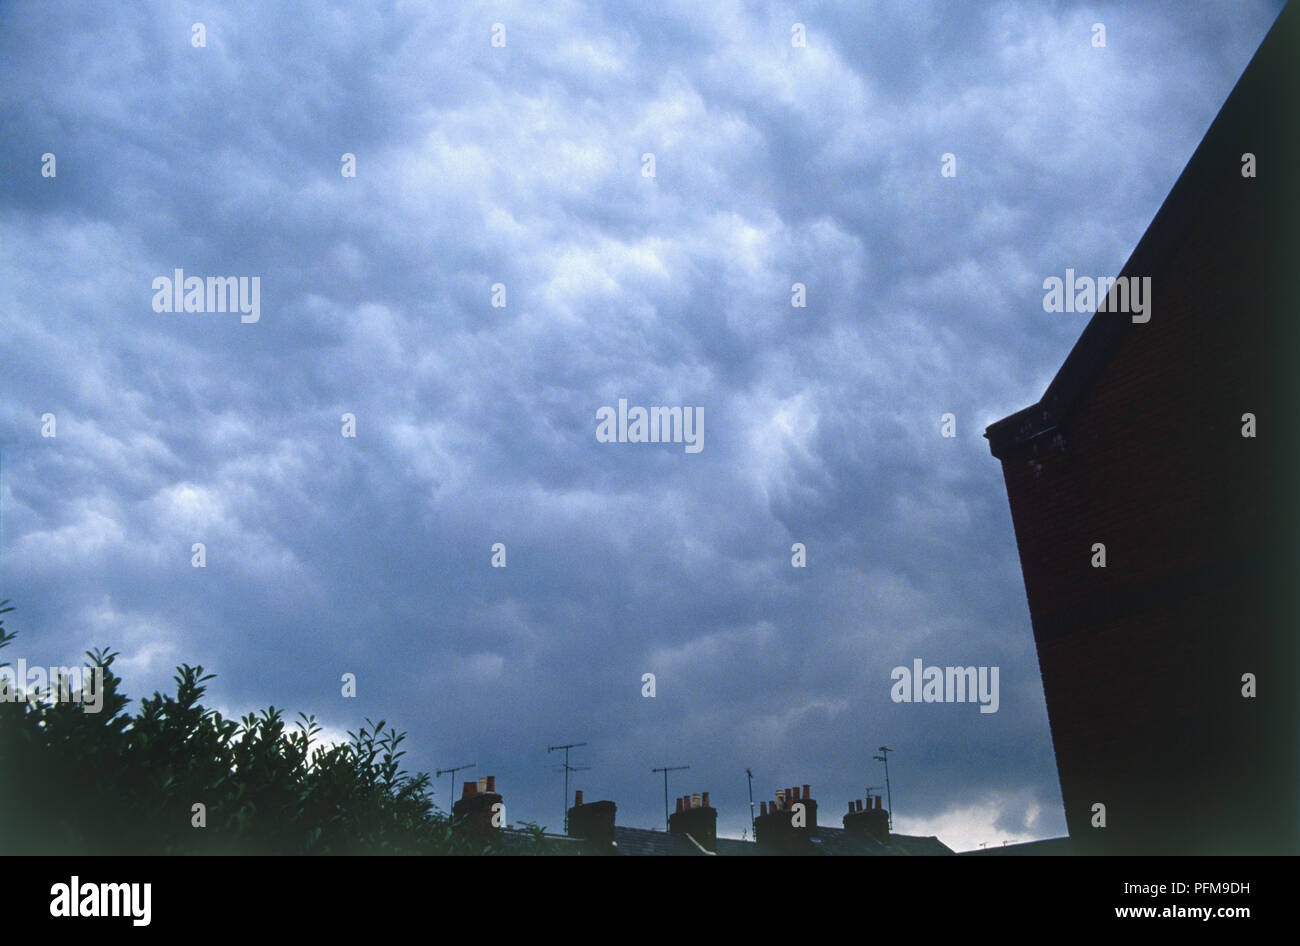 Altocúmulos nubes, acumulando en un oscurecimiento, cielo tormentoso por encima de tejados y chimeneas. Foto de stock